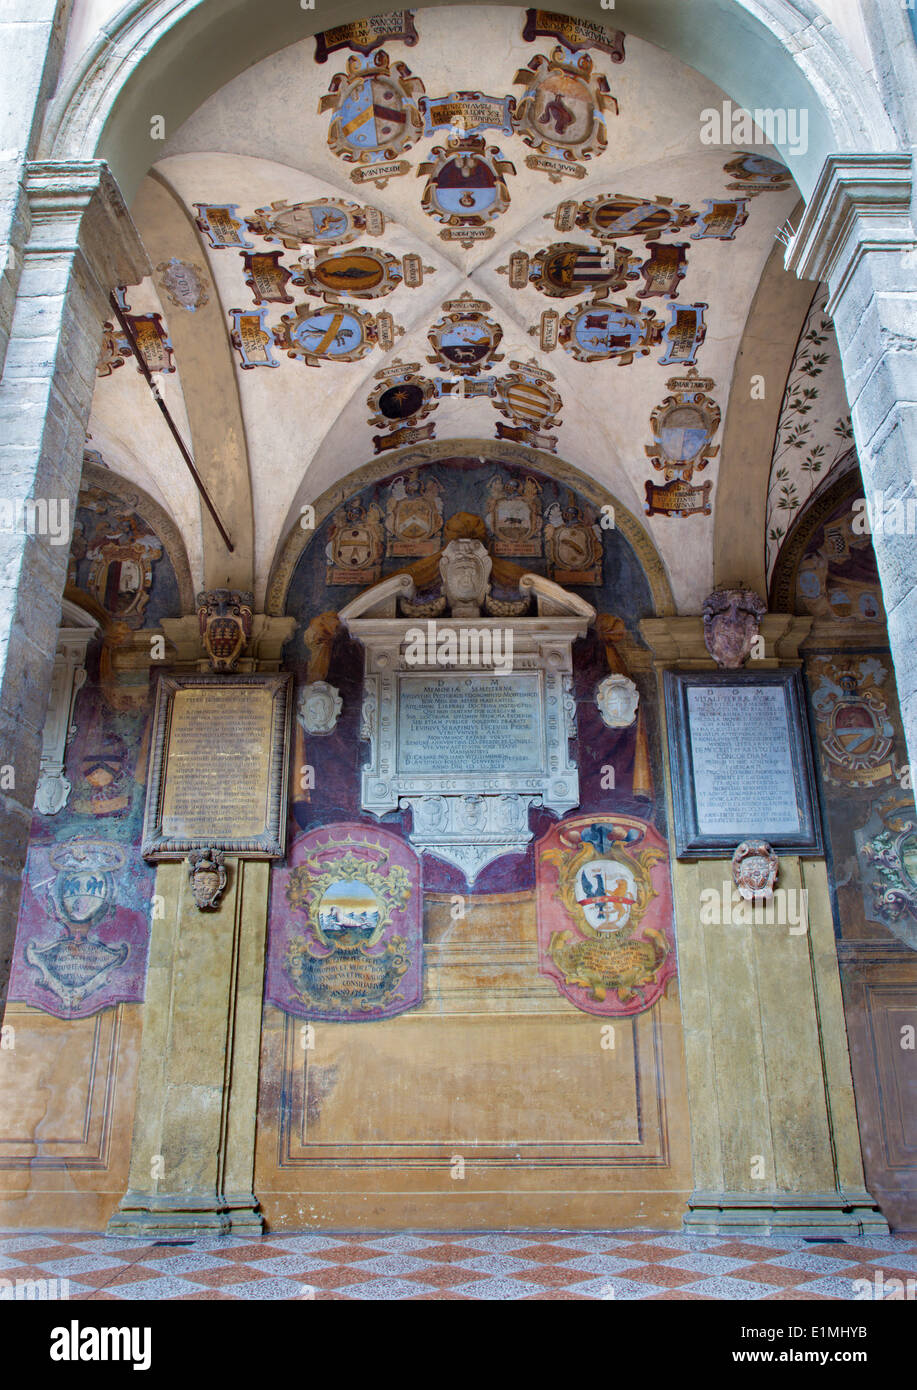 BOLOGNA, ITALY - MARCH 15, 2014: Porcicos and atrium from the entry to external atrium of Archiginnasio. Stock Photo